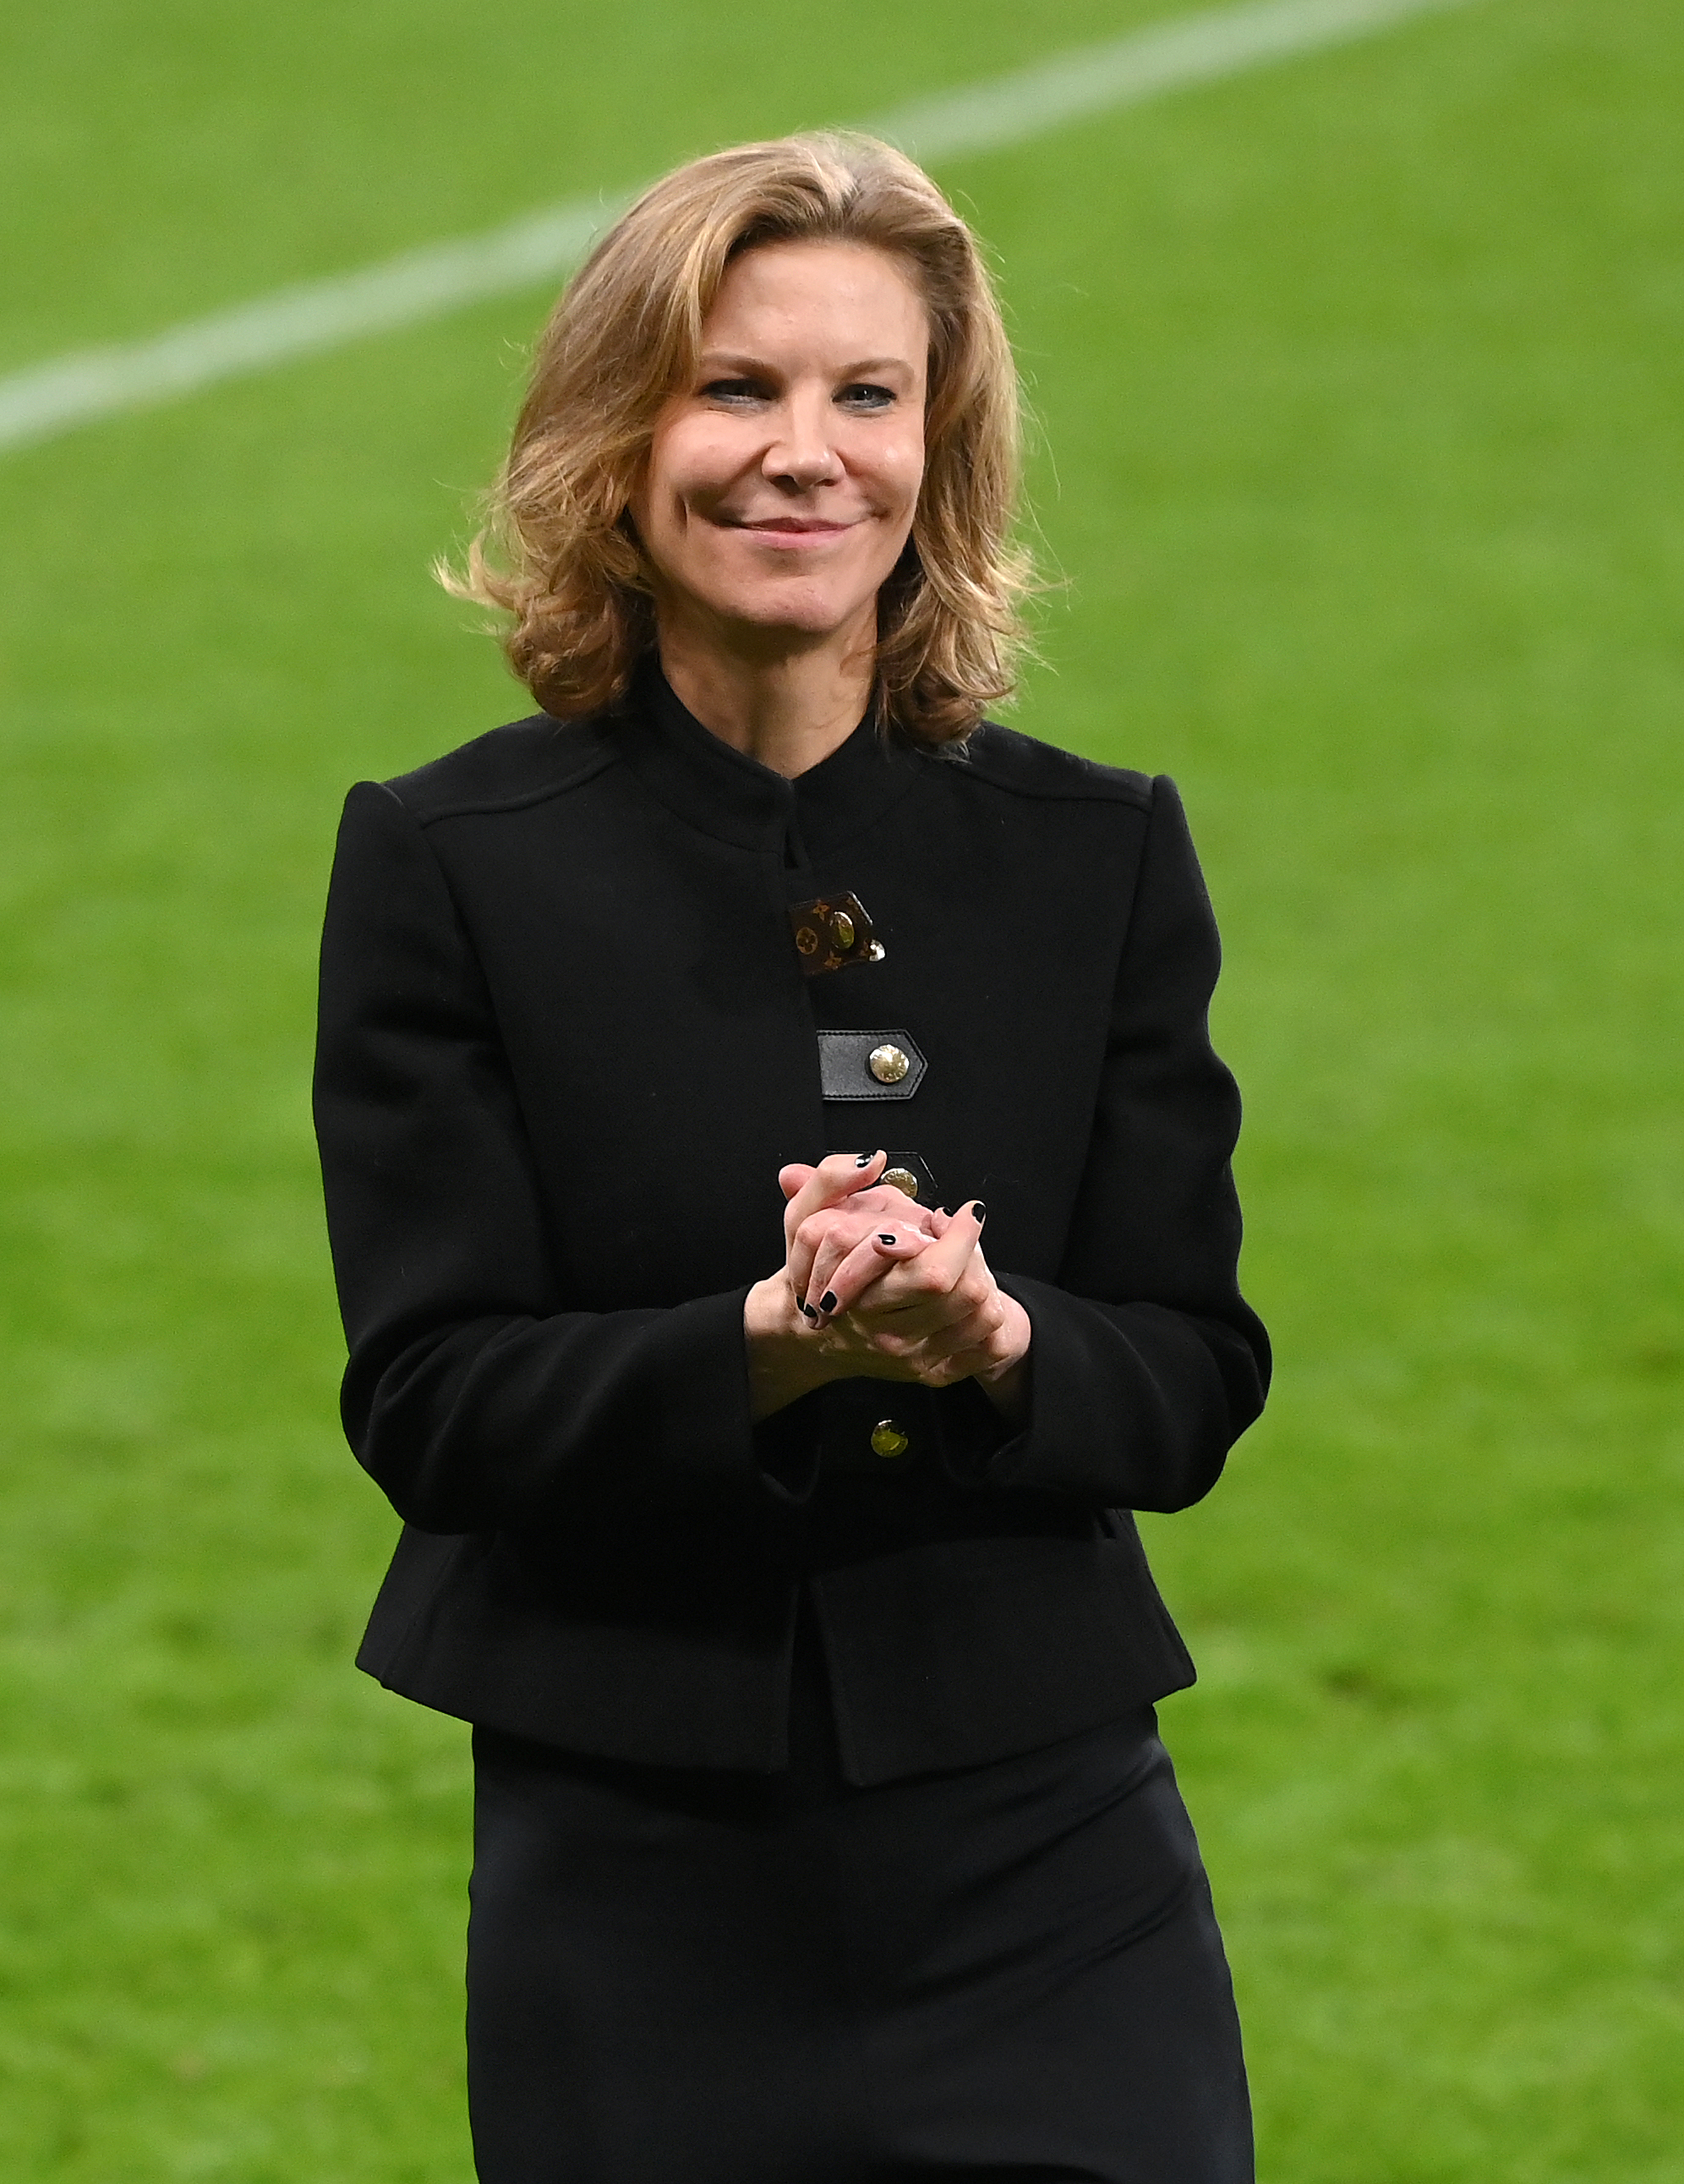 Frau Staveley, Direktorin von Newcastle United, besitzt einen Anteil von 6 % am Verein